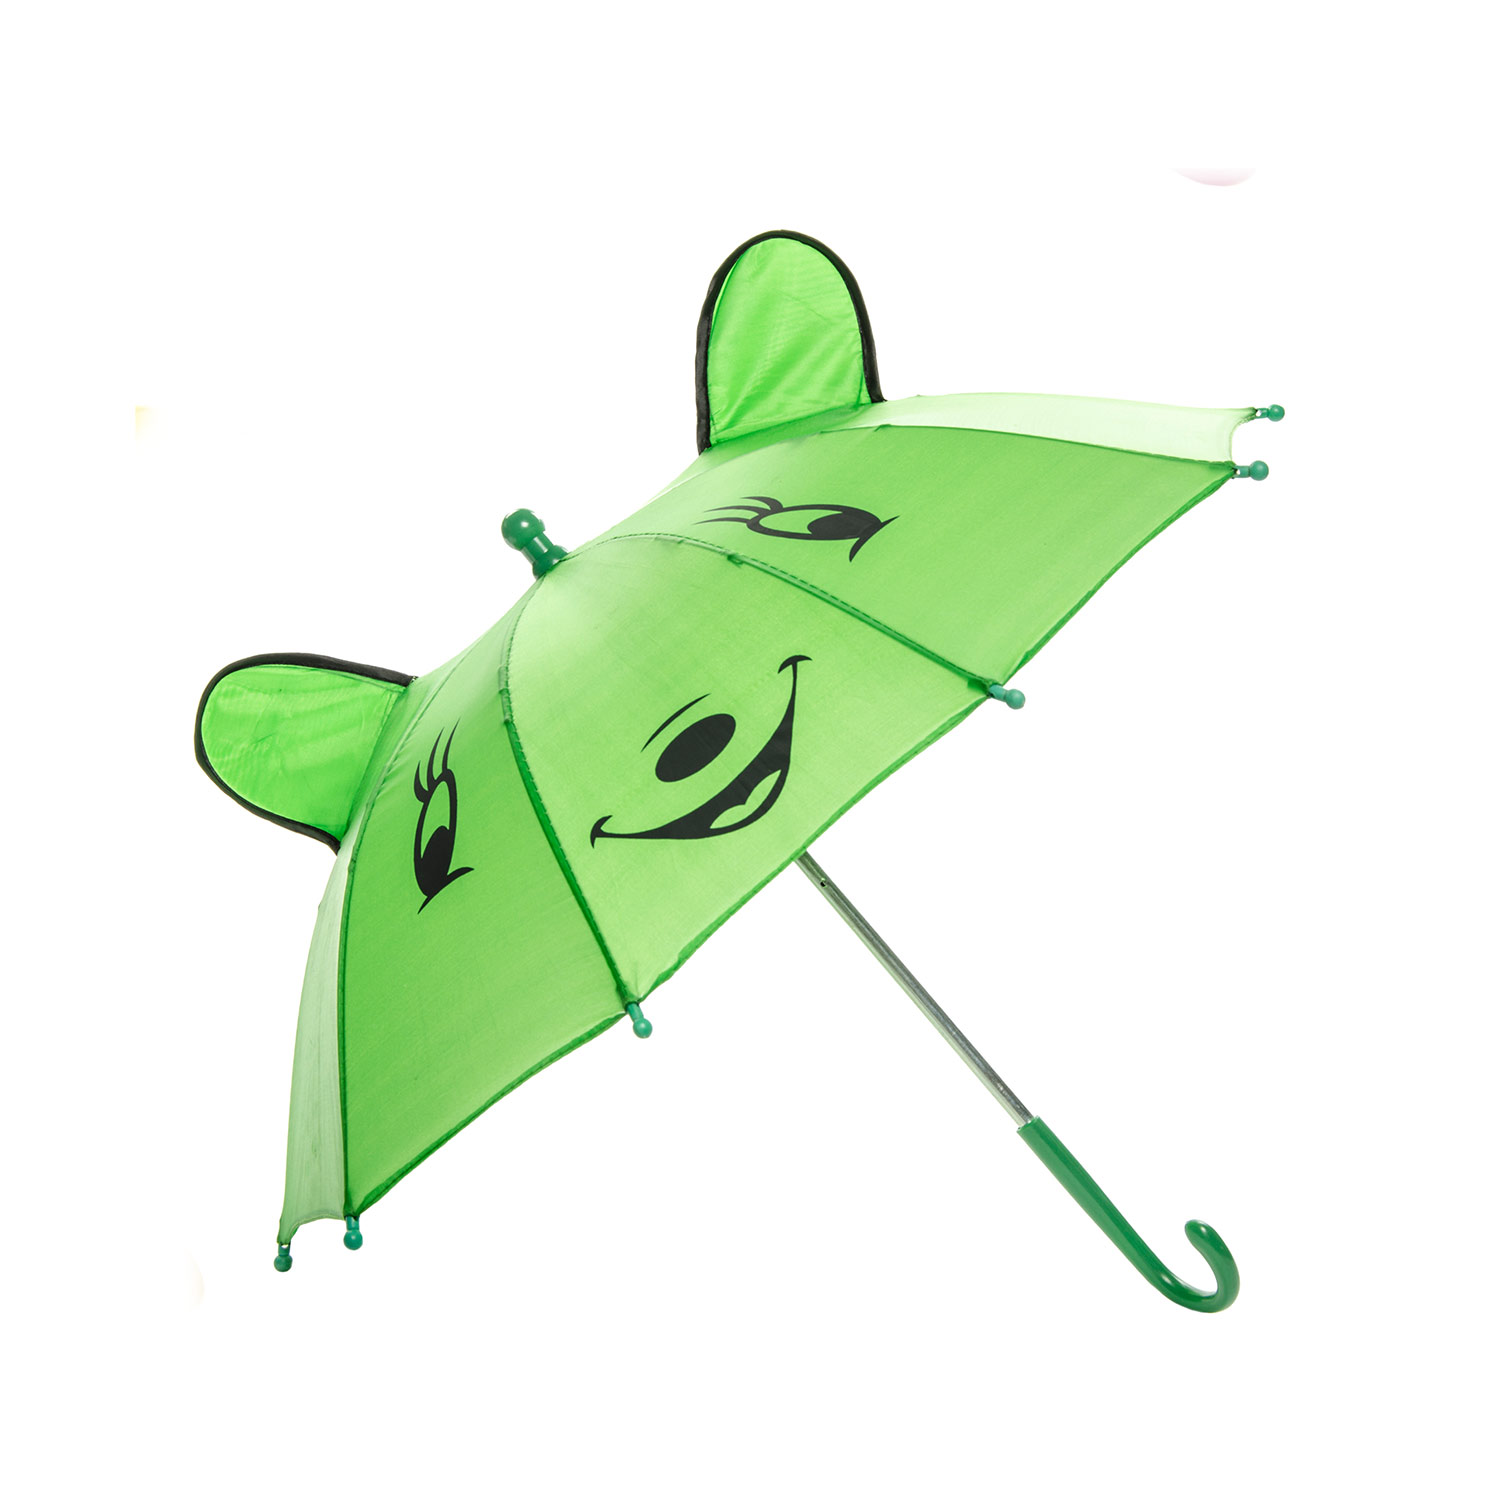 Vrolijke Dieren Paraplu - Groen